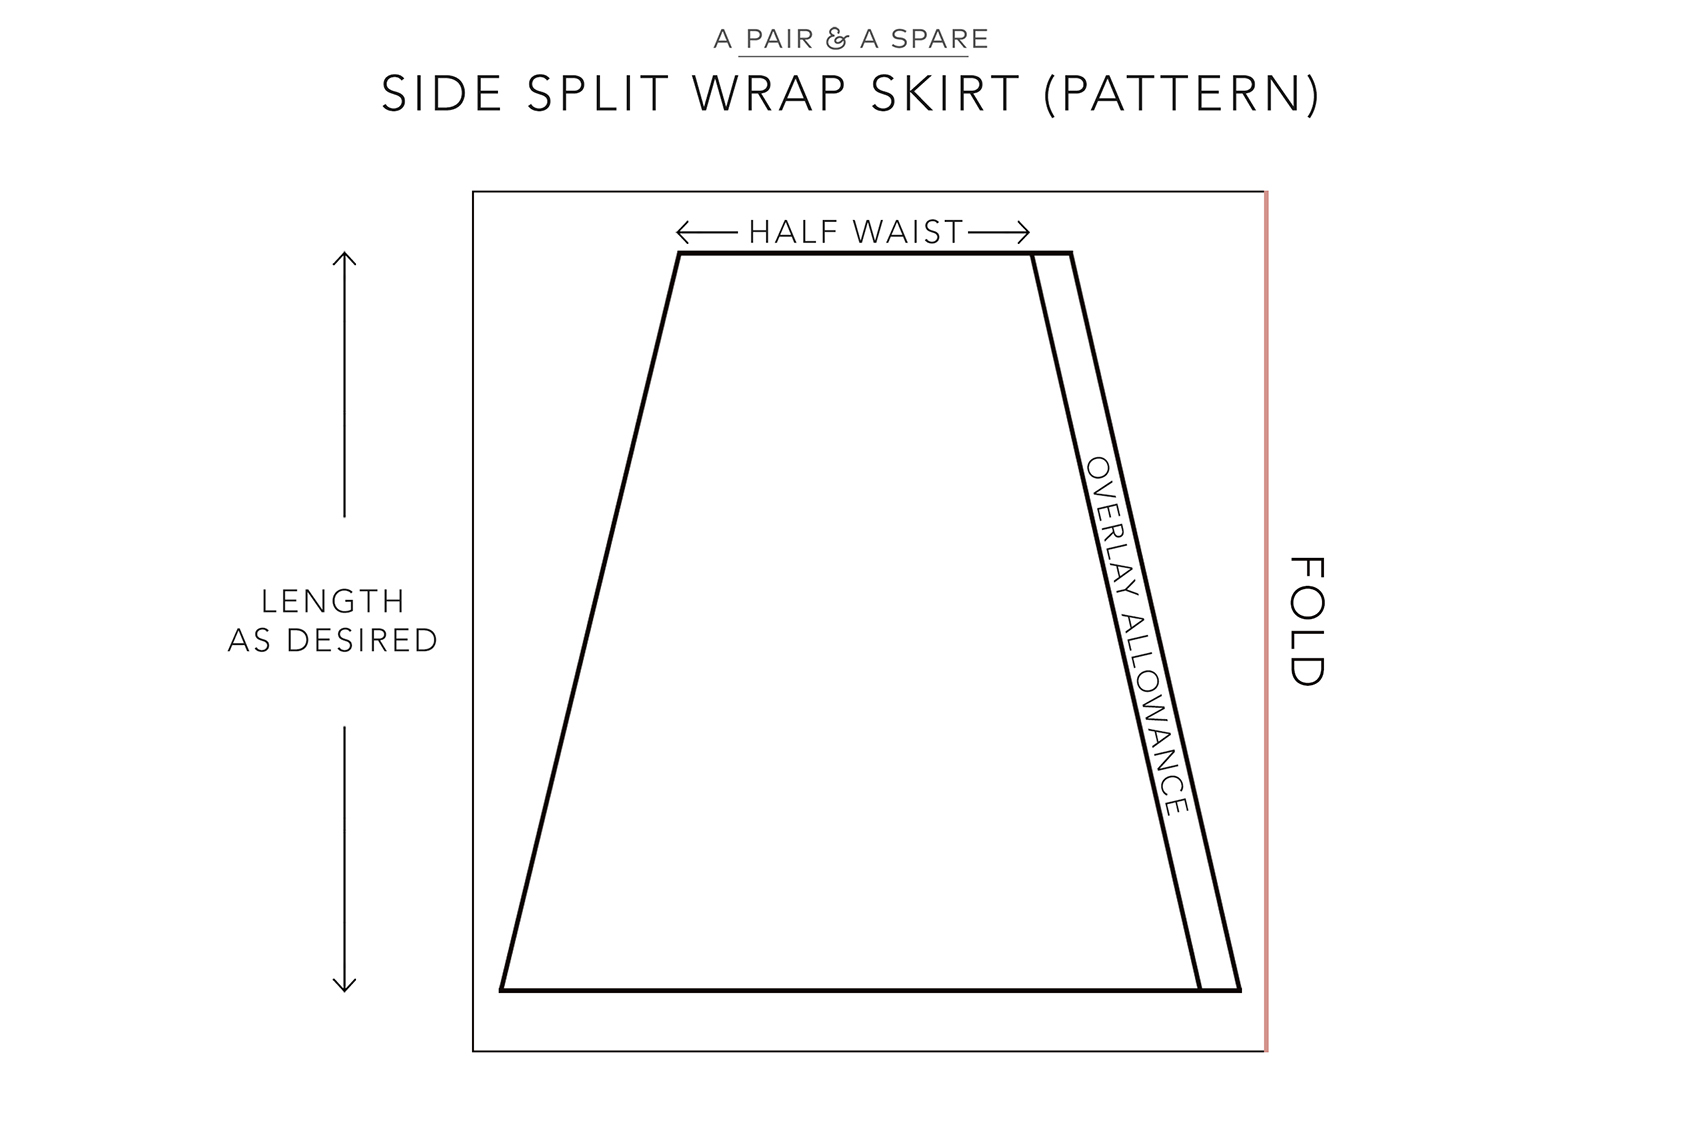 DIY Linen Side Split Skirt